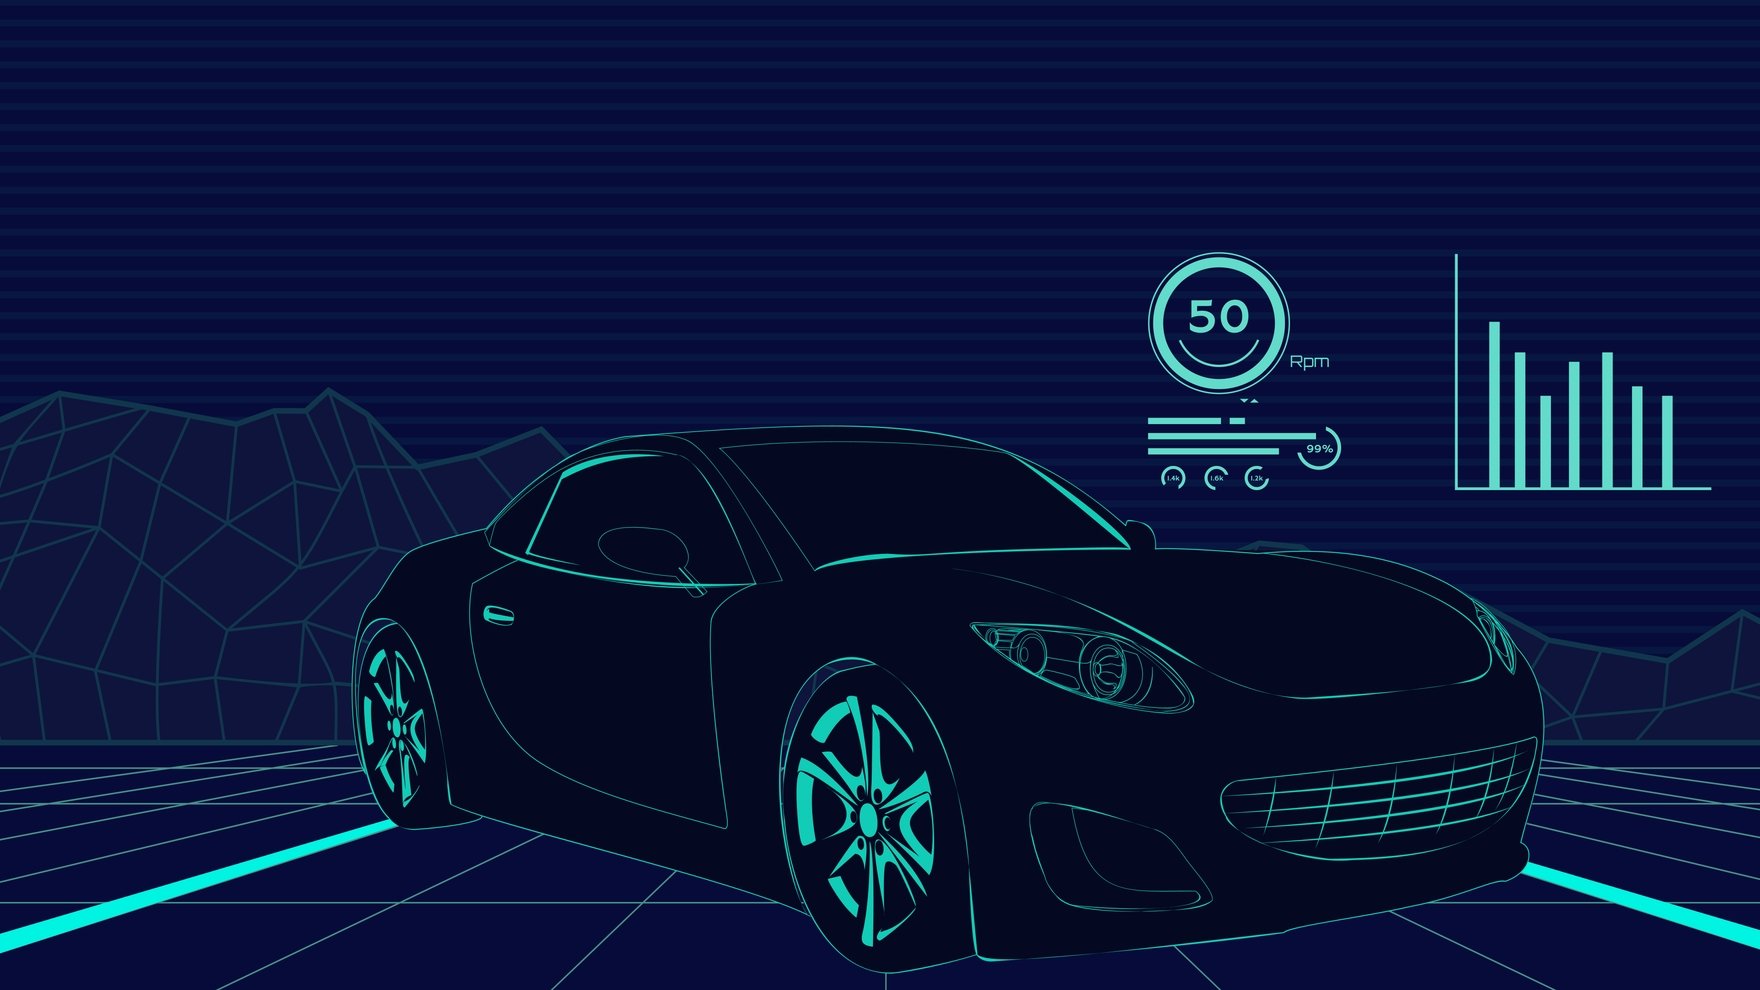 Car Virtual Background in Illustrator, EPS, SVG, JPG, PNG